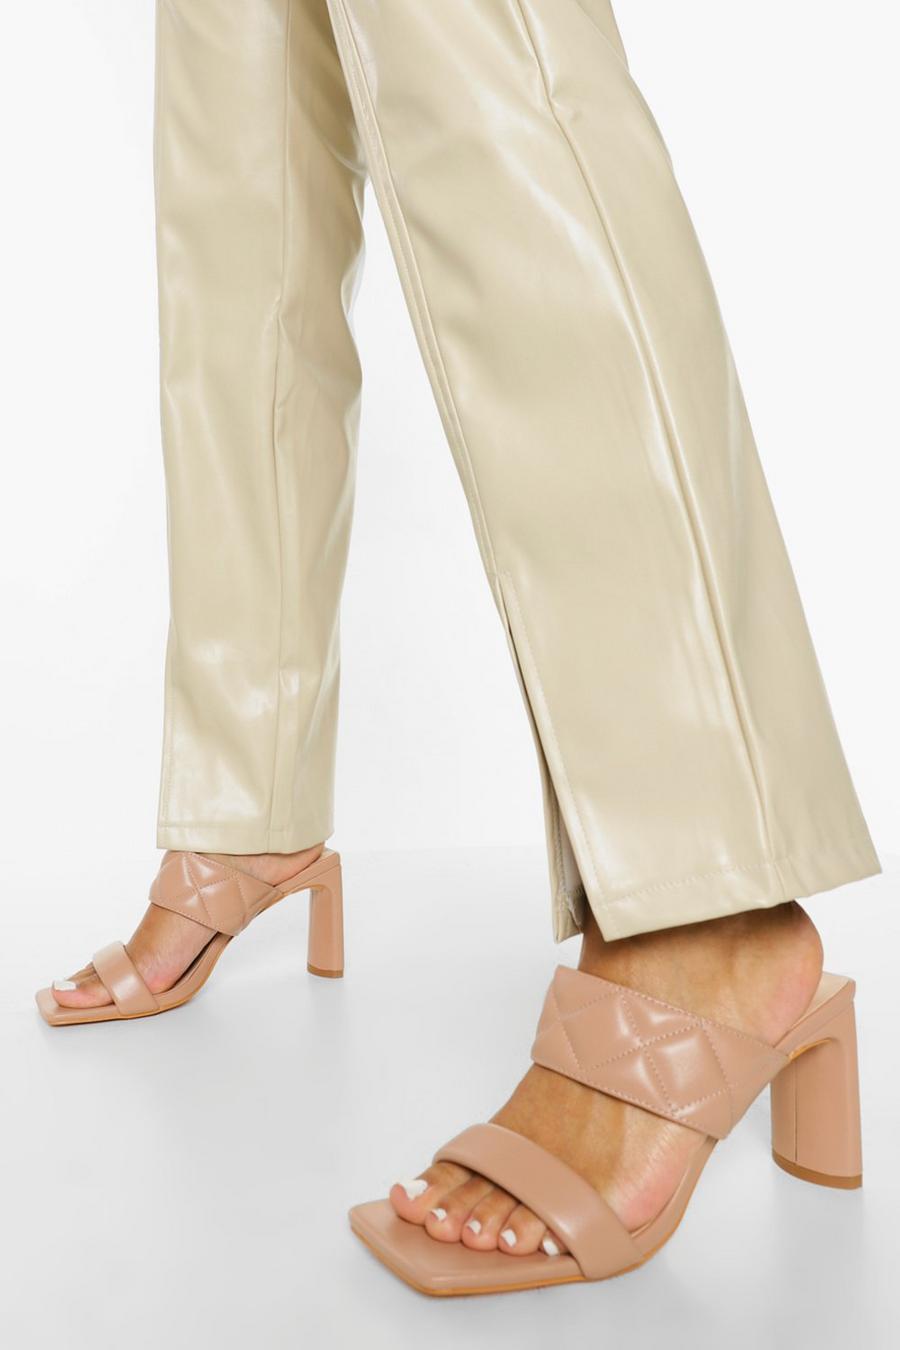 קאמל beige נעלי מיול עם רצועות כפולות ודוגמת קווילט